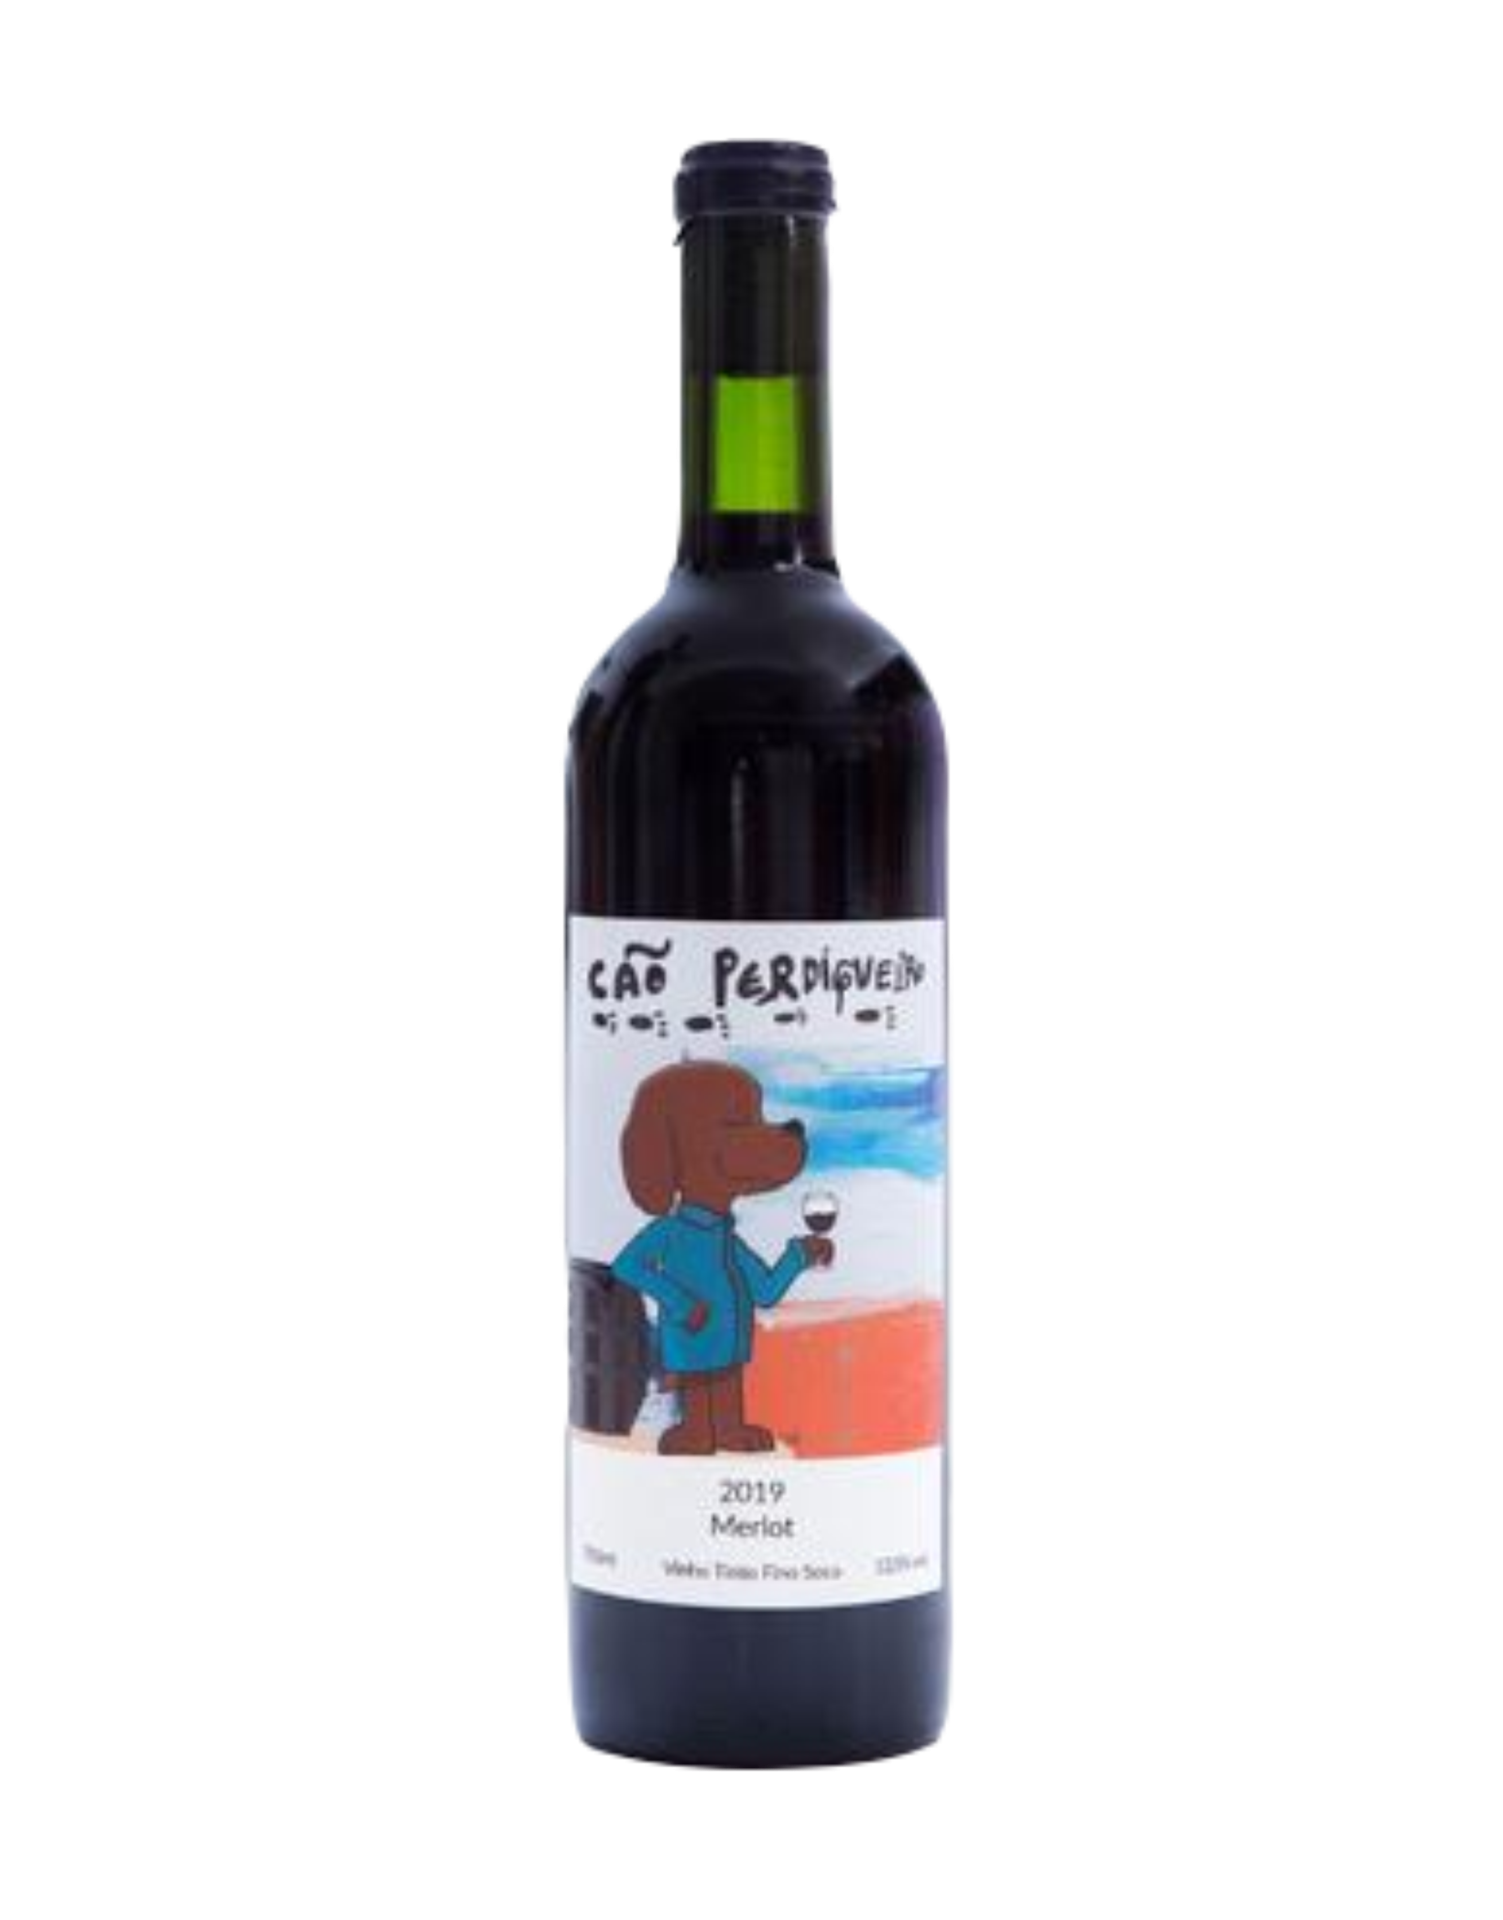 Vinho Cão Perdigueiro - Tinto Seco - Merlot - 750 ml